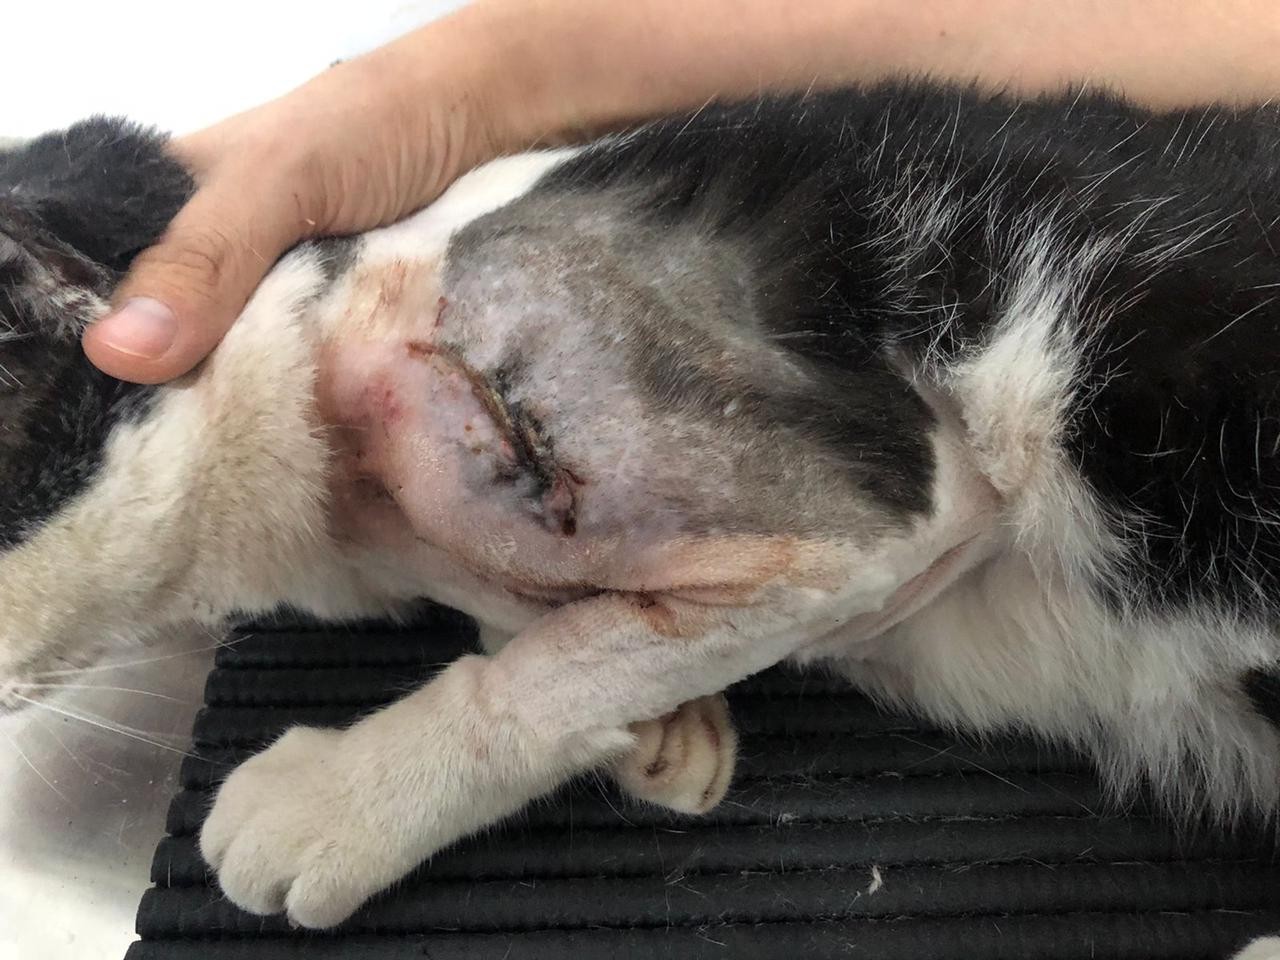 VÍDEO: câmera de segurança flagra cão da raça pitbull atacando gato em Petrolina, PE